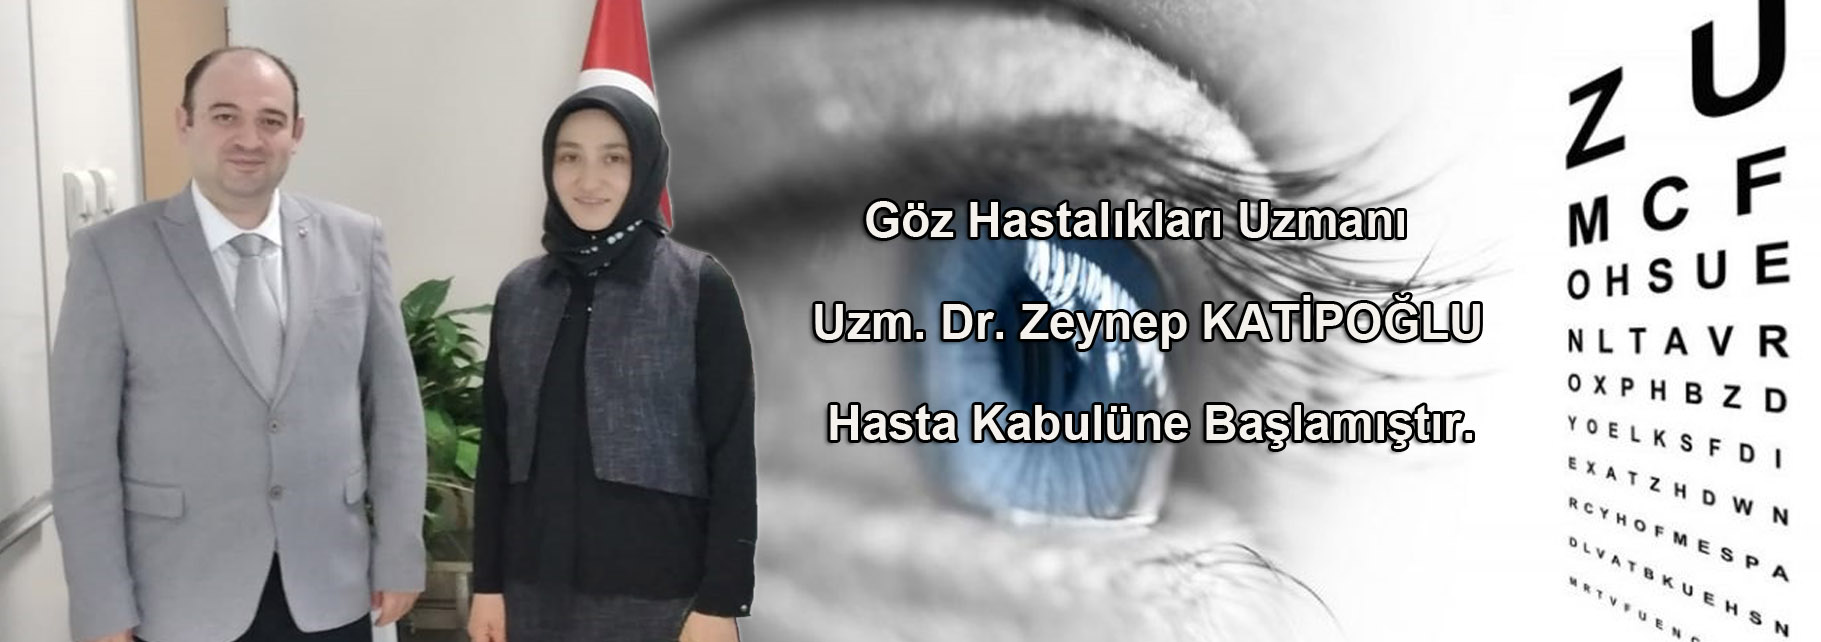 Göz Hastalıkları Uzmanı Dr. Zeynep KATİPOĞLU Hastanemizde Görevine Başlamıştır.